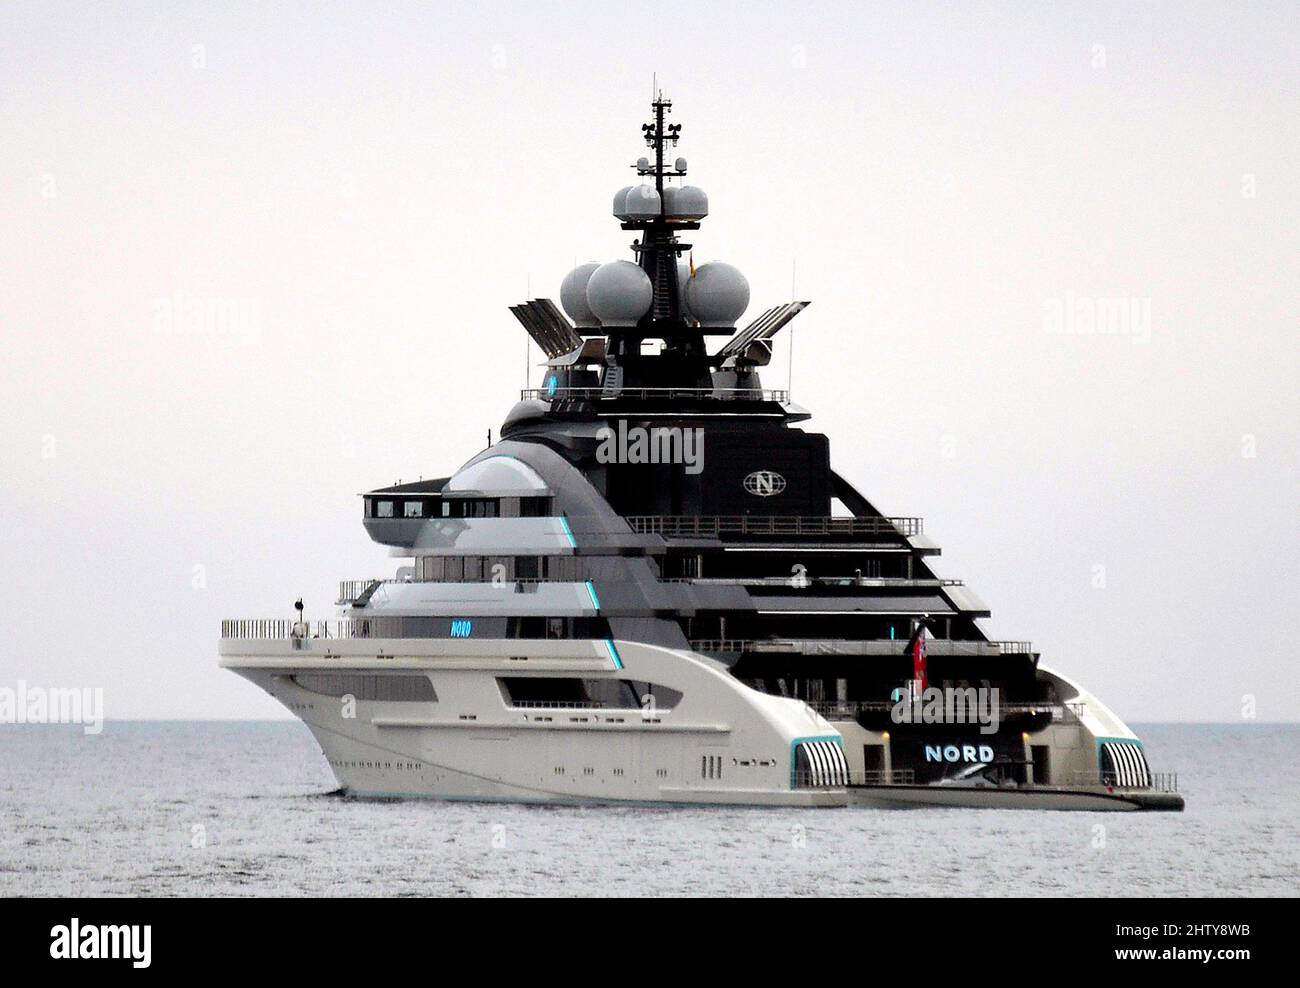 Yacht Nord, de 142 metros de largo, propiedad del empresario ruso Alexei Mordashov, anclado en el Mar Mediterráneo, frente a la costa de Palma de Mallorca, Spa Foto de stock